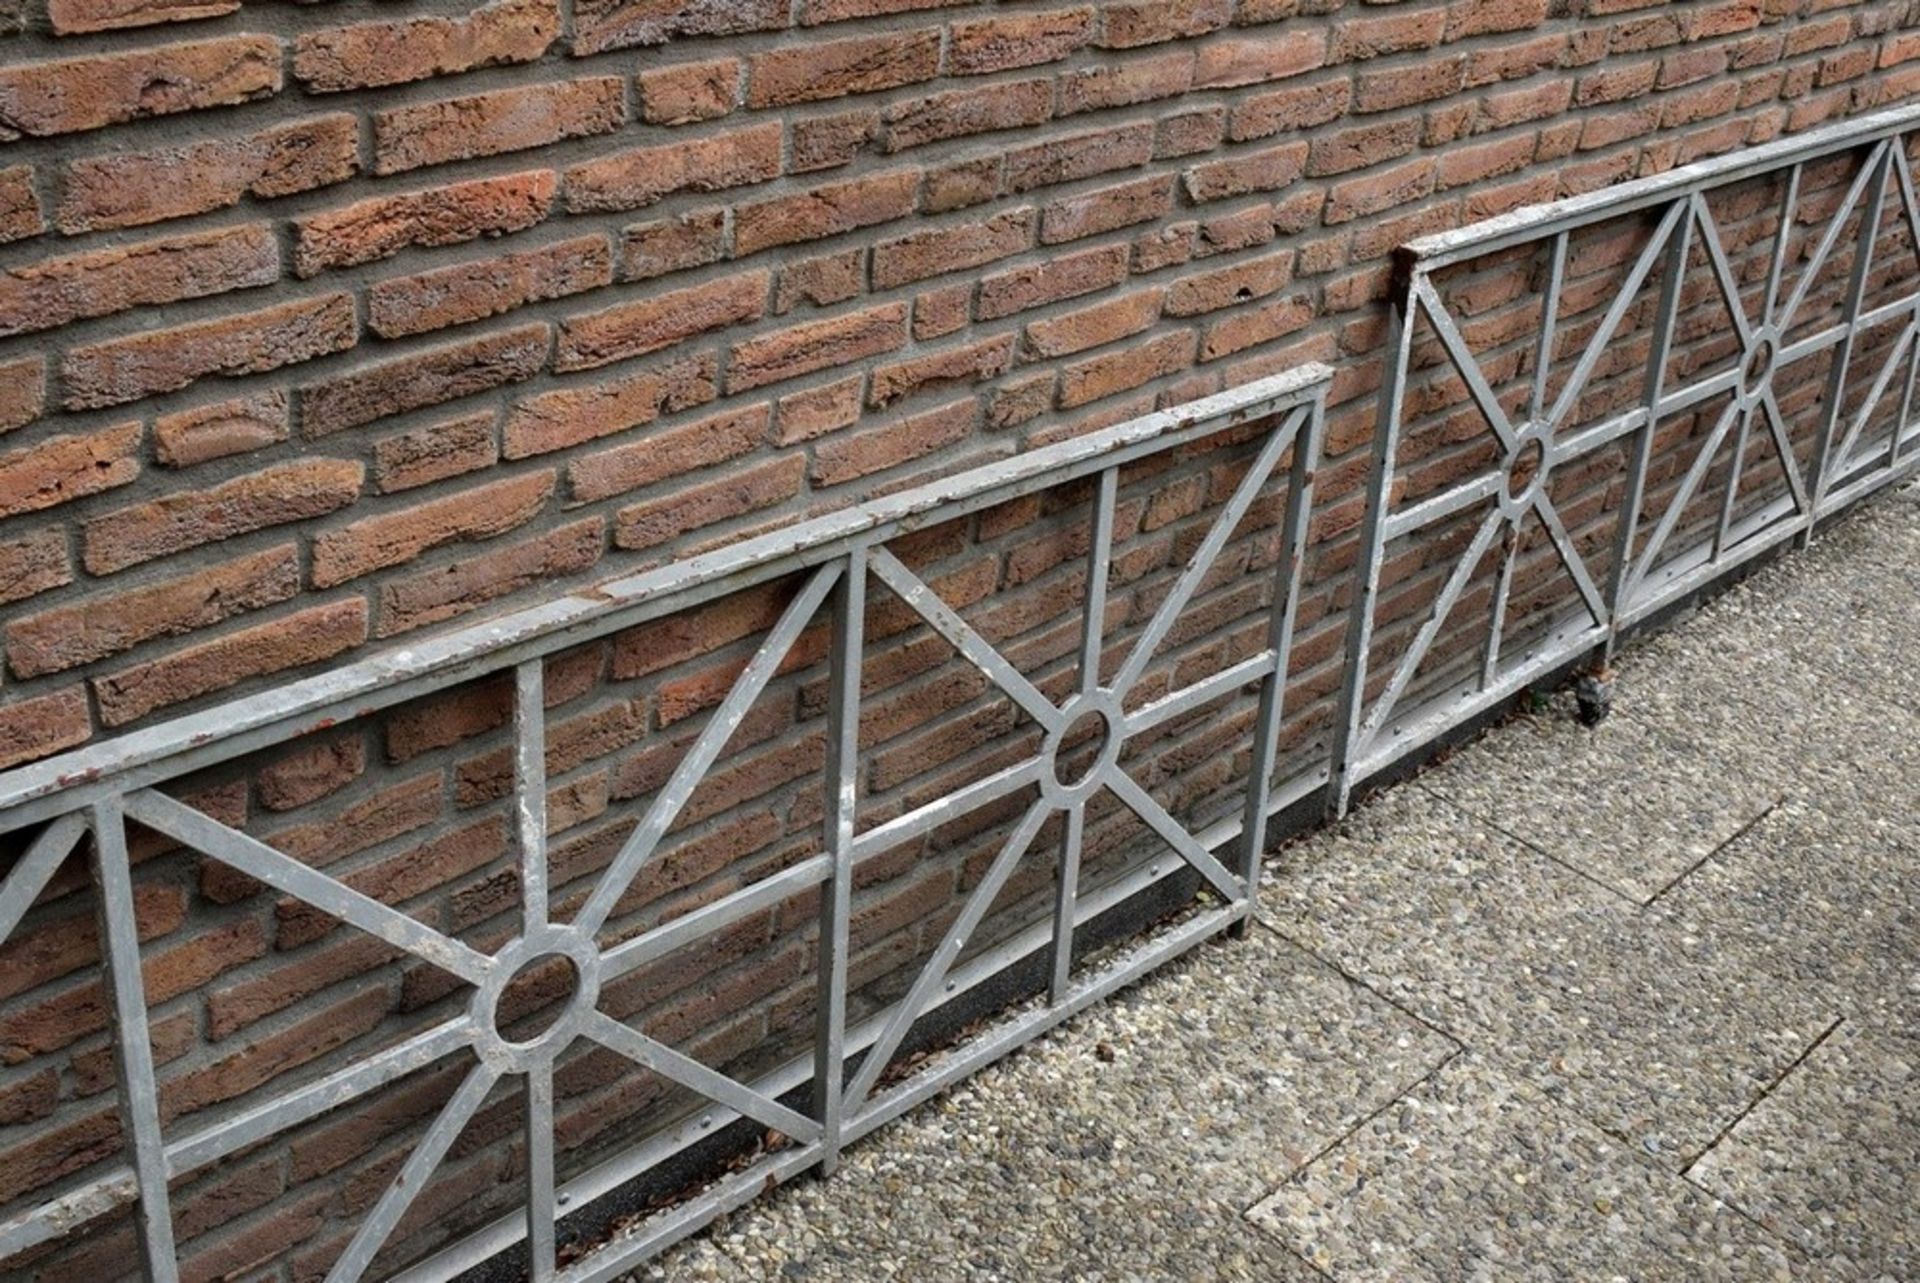 4 Eisen Gitter in klassisch-römischer Formensprach | 4 iron grids in classical-roman design, grey l - Bild 2 aus 3